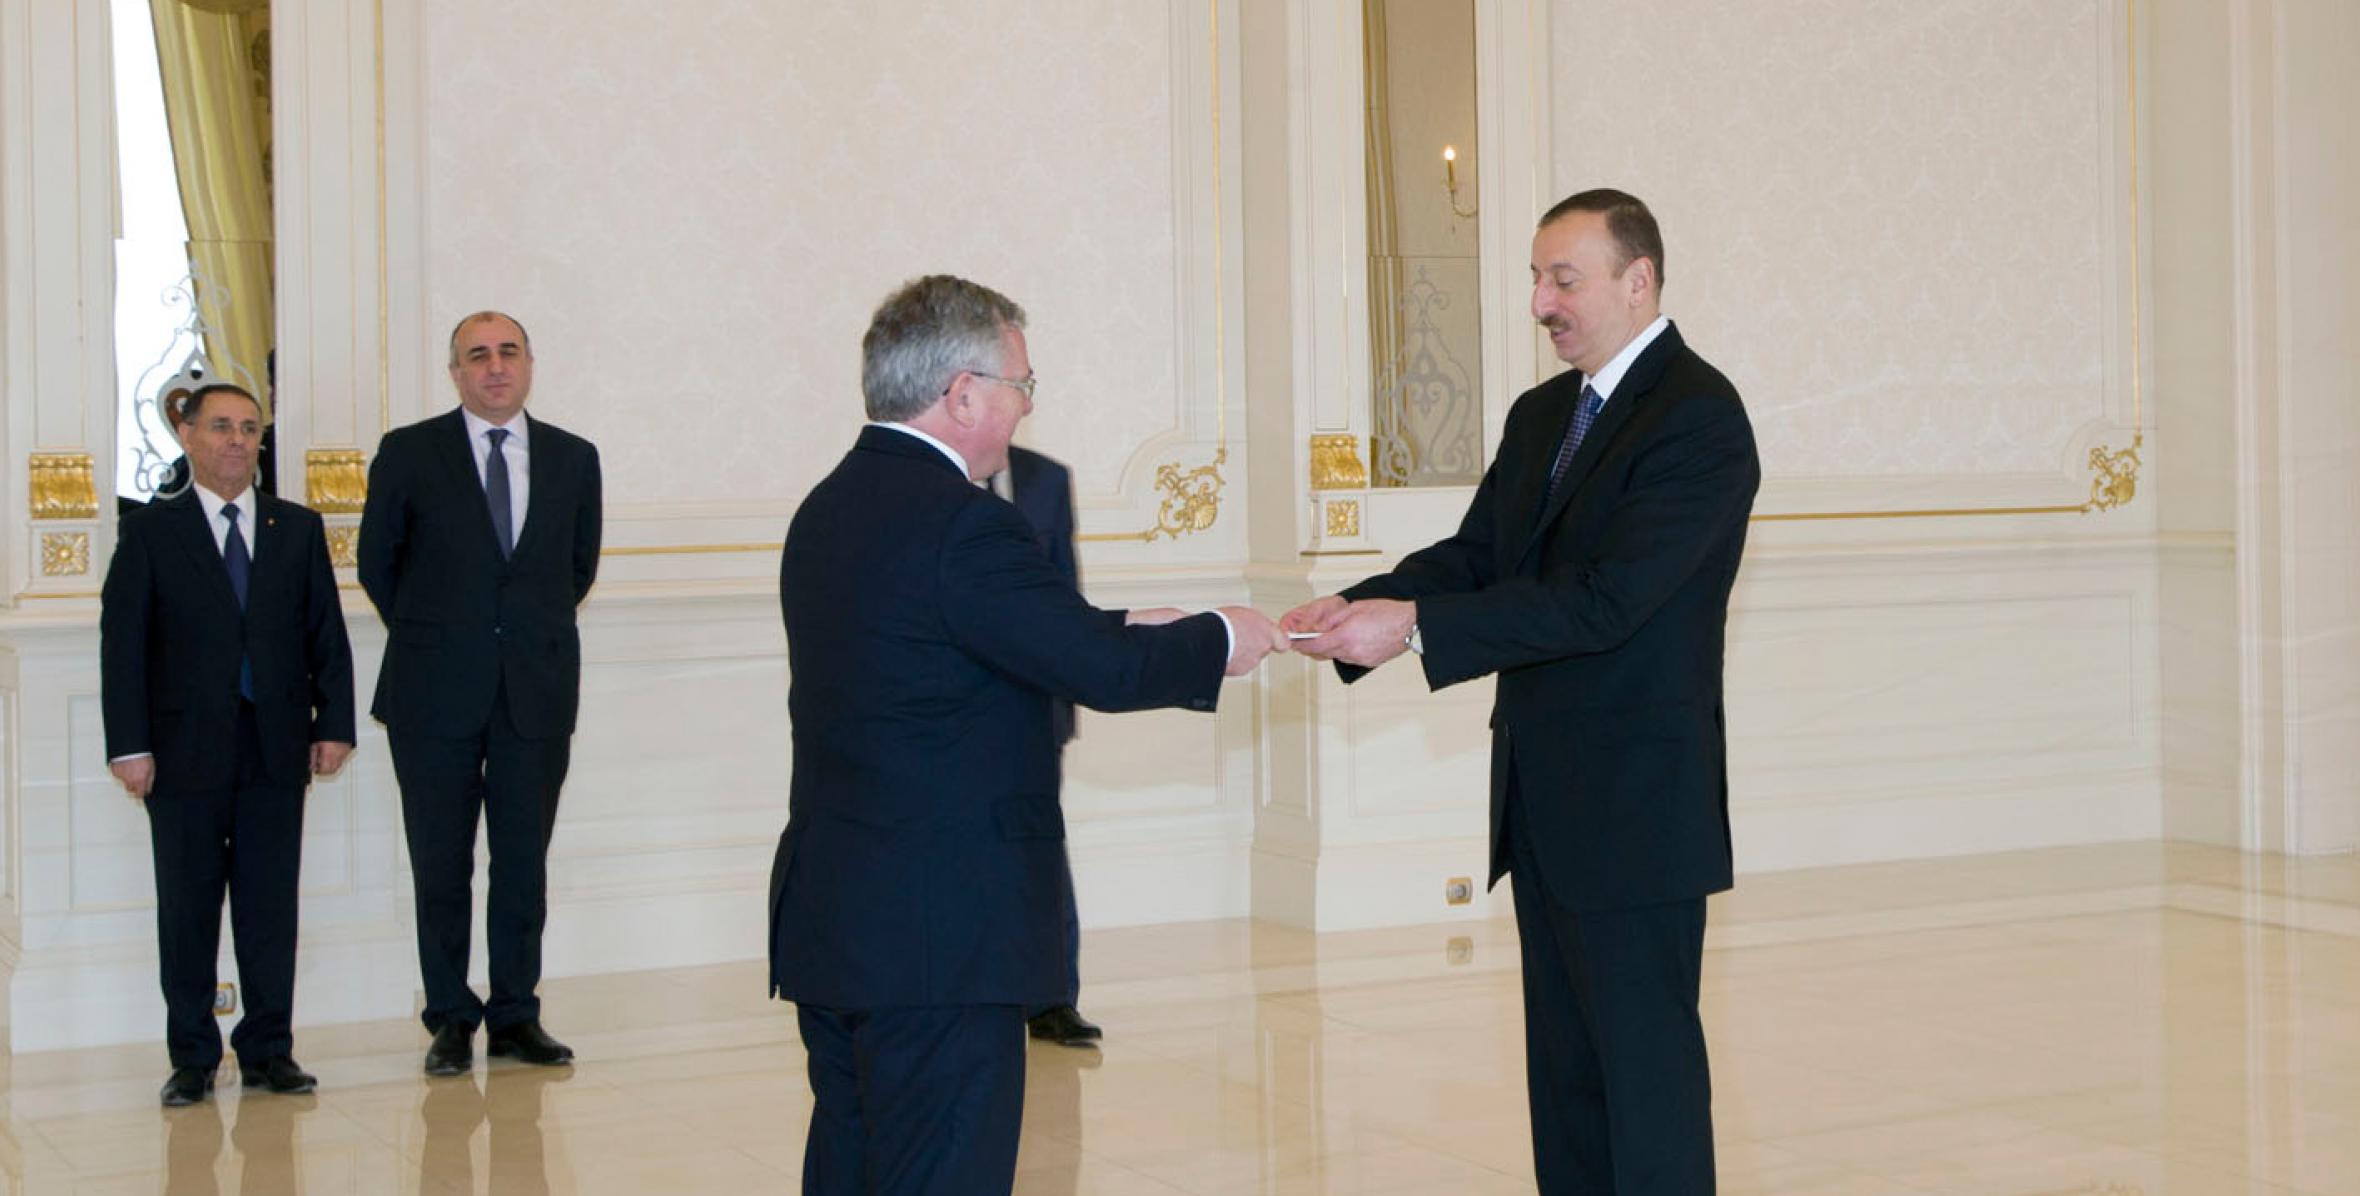 Ильхам Алиев принял верительные грамоты посла Дании в Азербайджане Рубена Мадсена